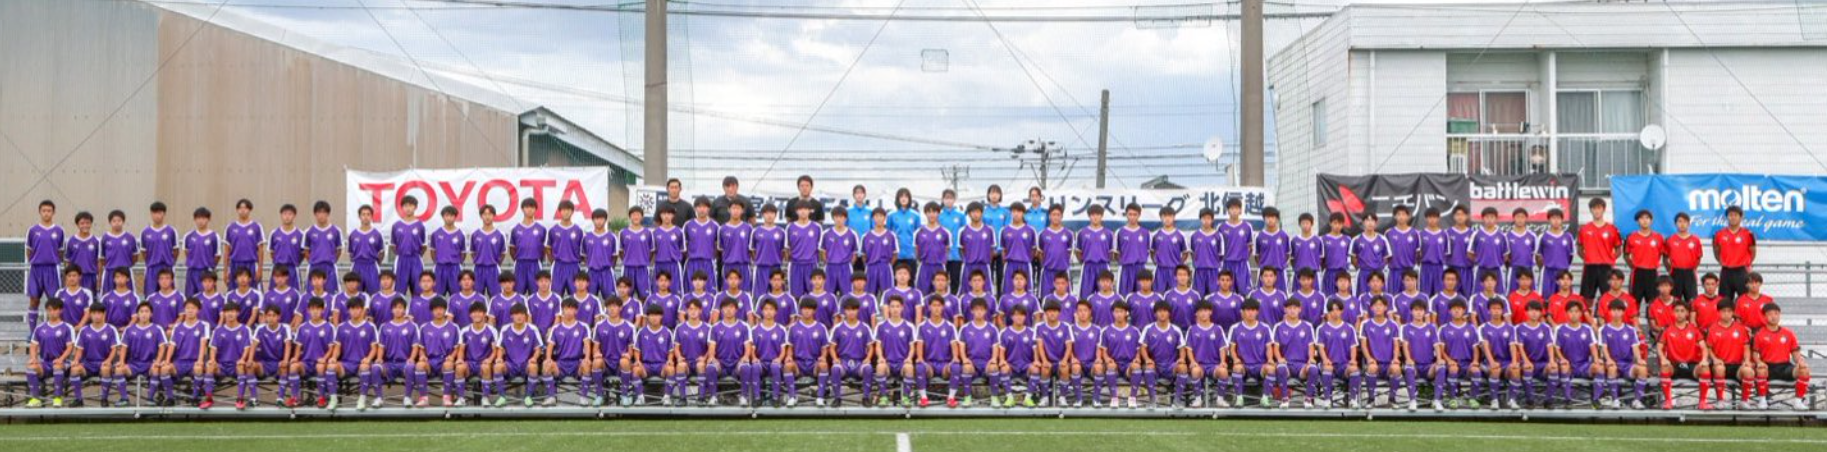 山本大心の通う富山第一高校はサッカー名門校